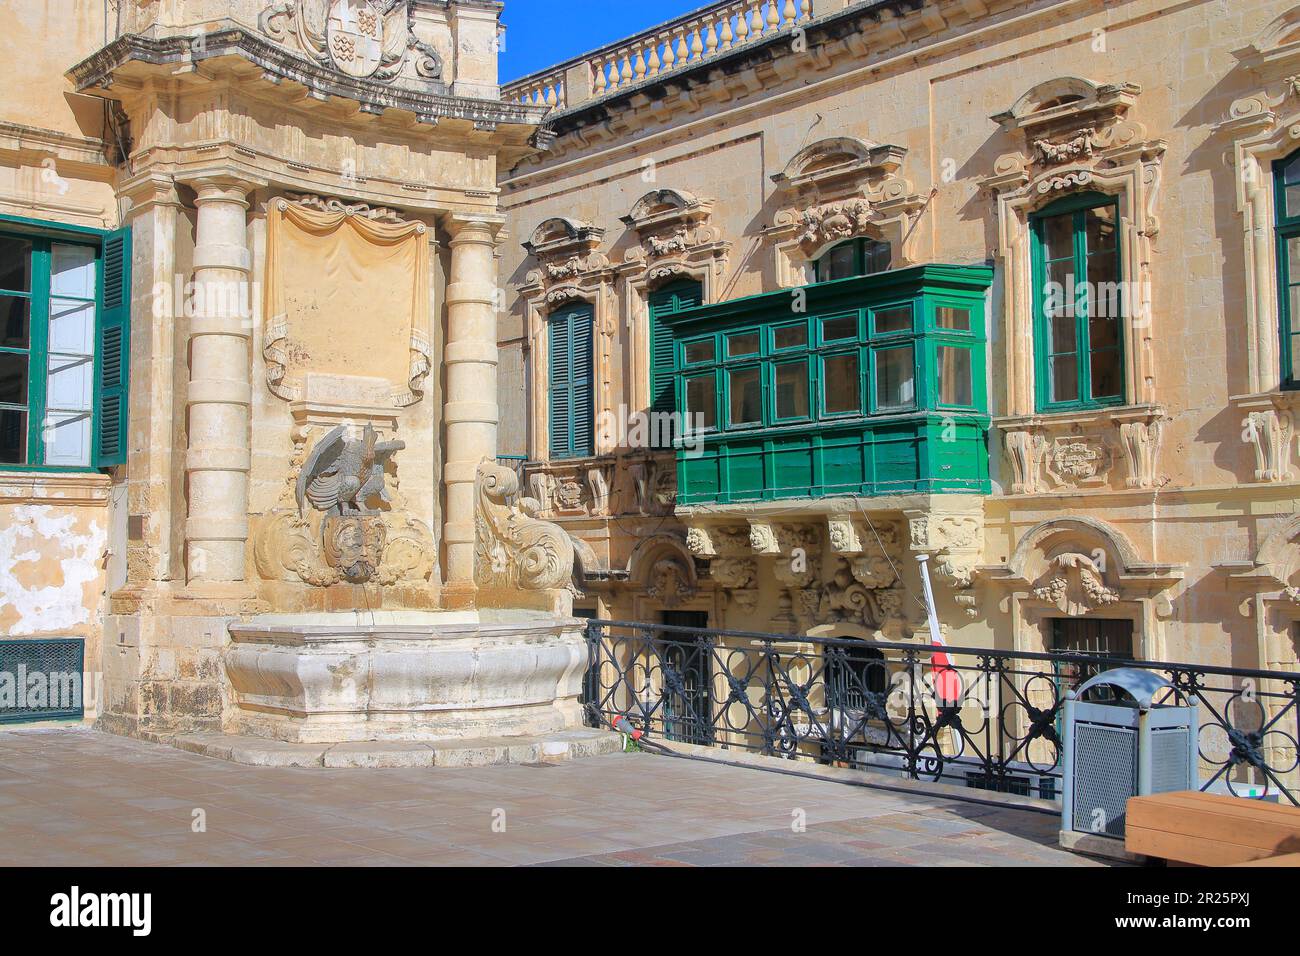 Das Foto wurde im Januar auf der Insel Malta aufgenommen. Das Foto zeigt die traditionelle Architektur der Altstadt von Valletta. Stockfoto